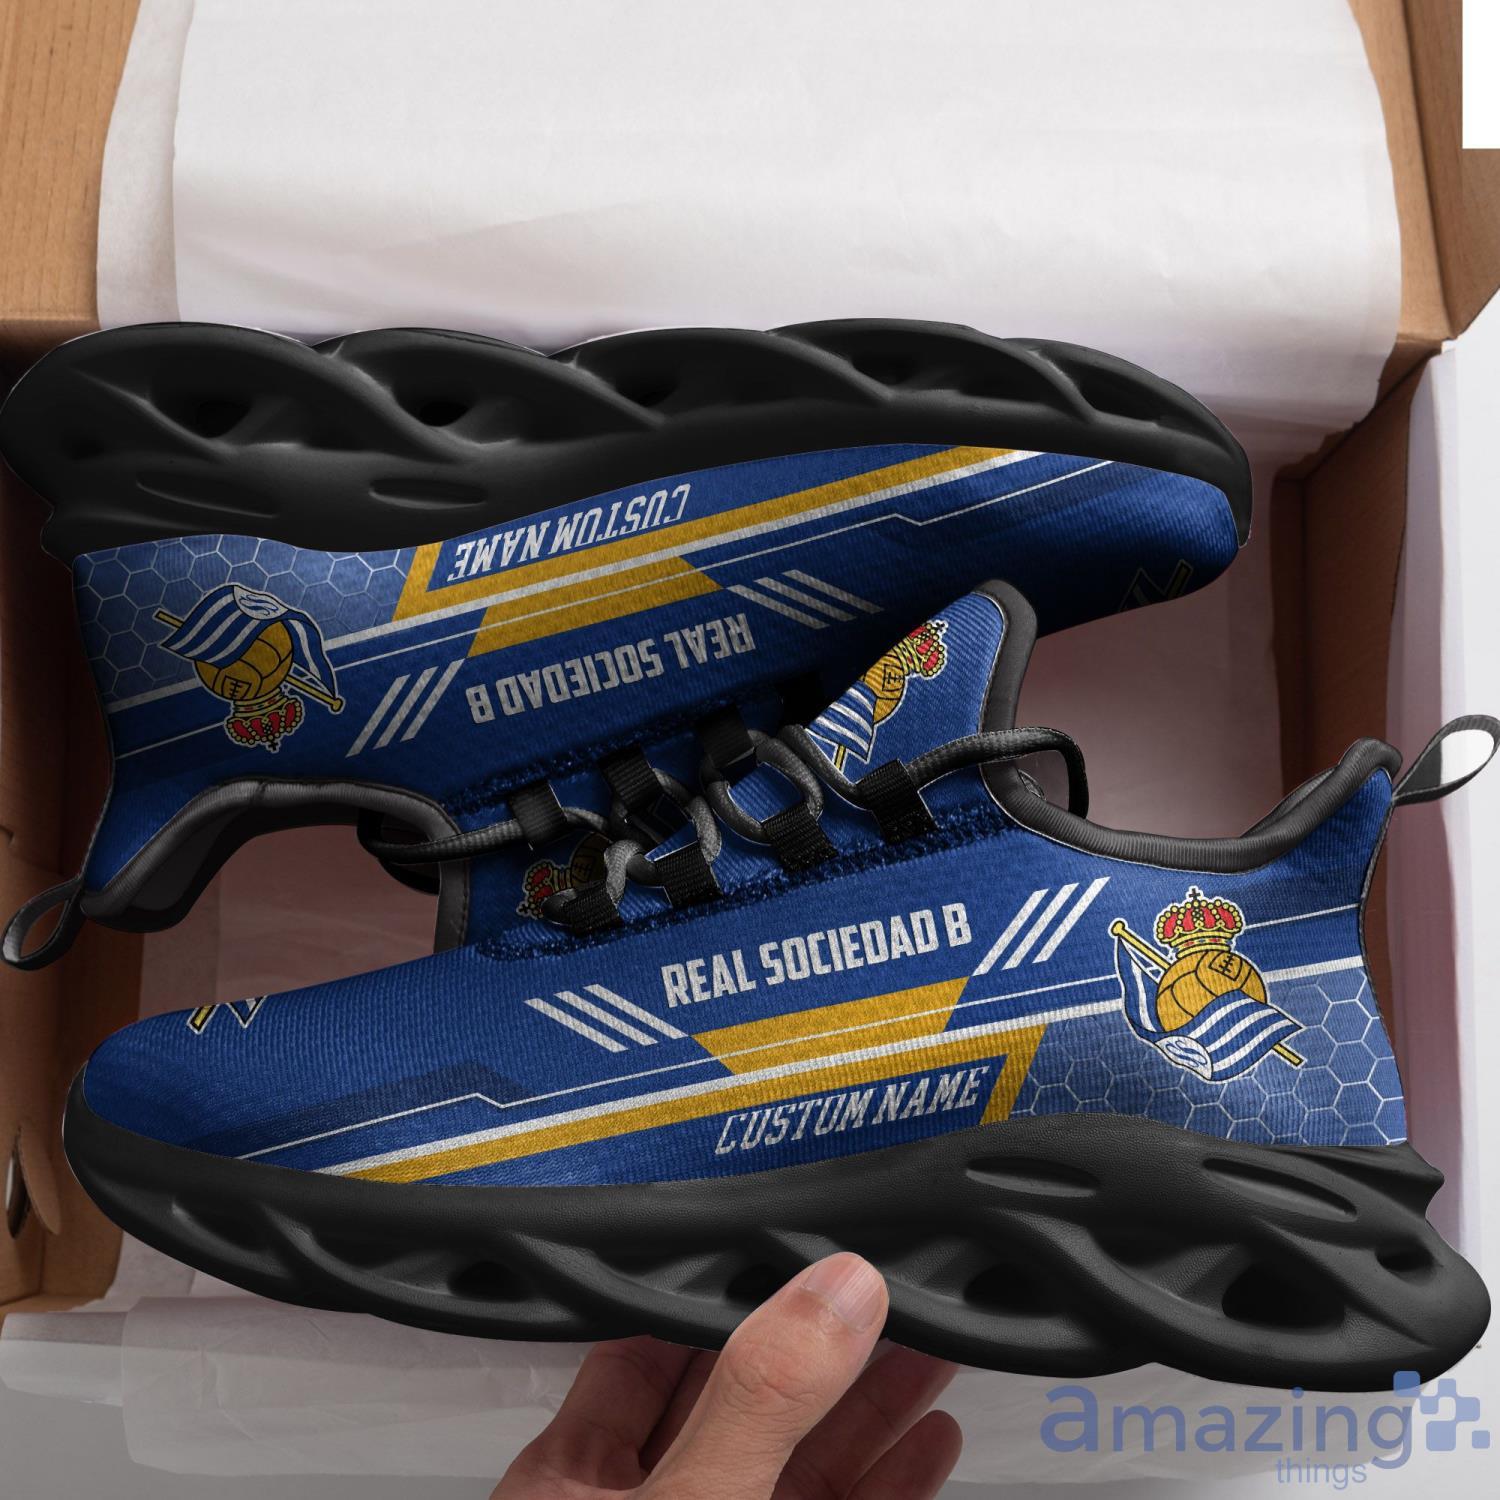 St. Louis Blues Custom Themed Shoes Sneakers for True Fan 